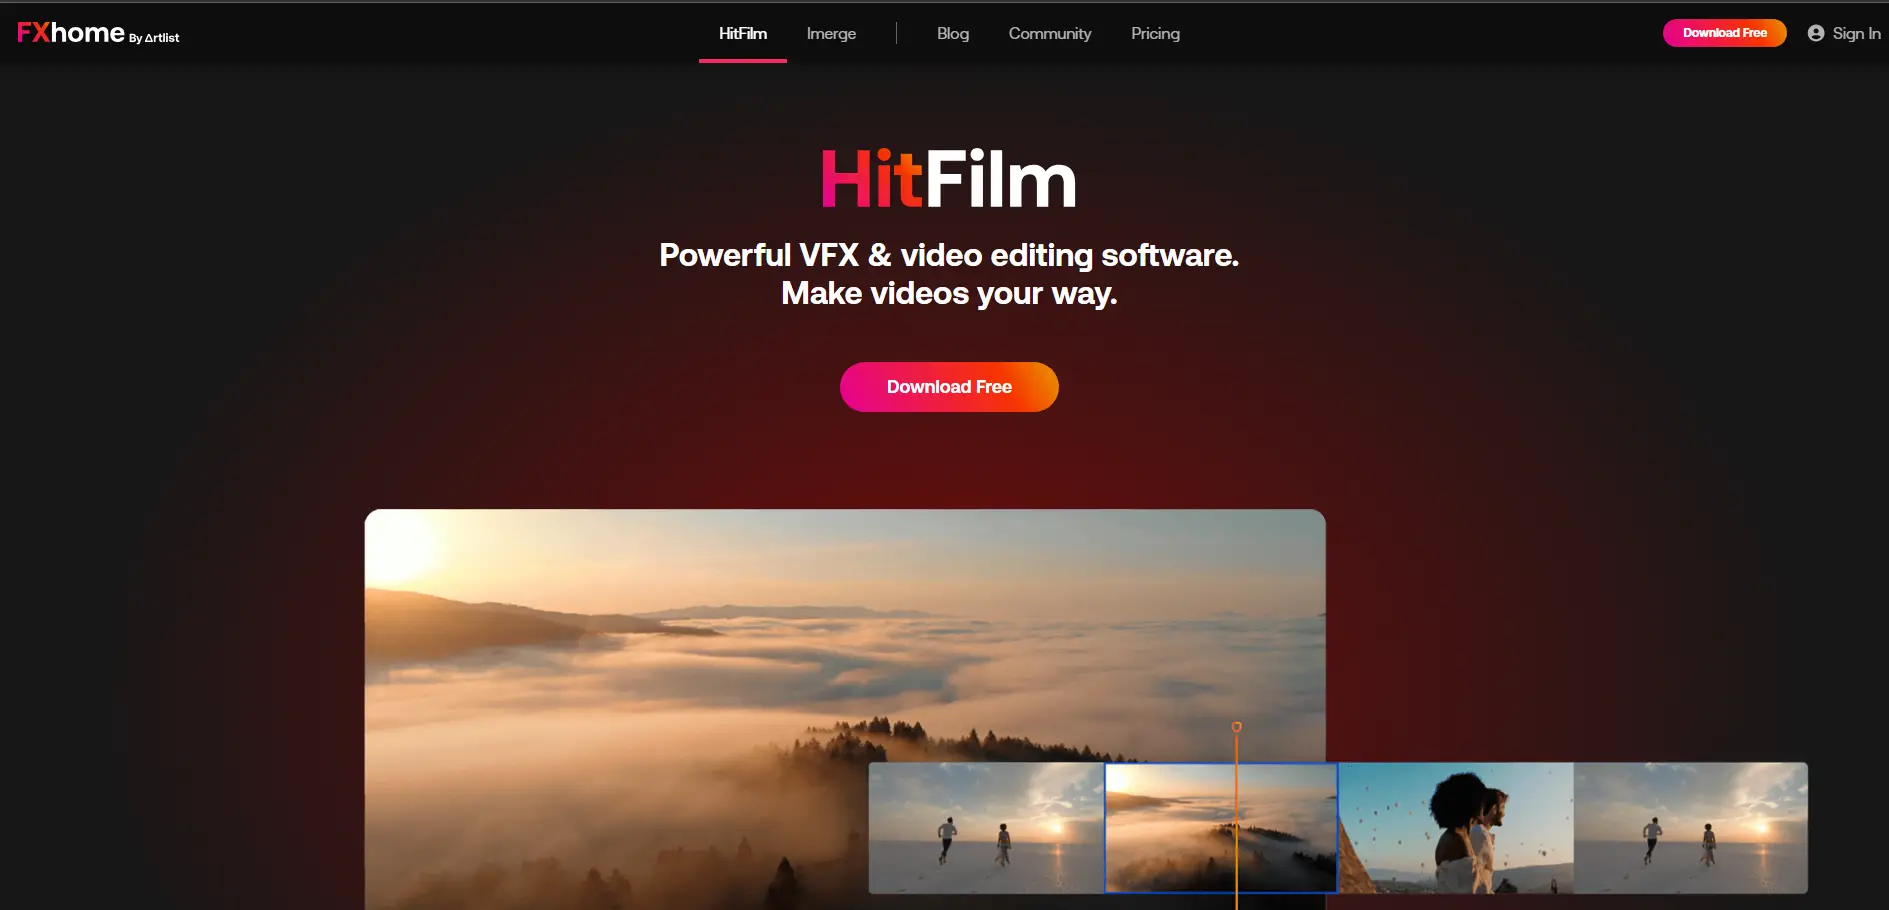 HitFilm Express Herramienta Gratuita para Edición de Videos en Realidad Virtual